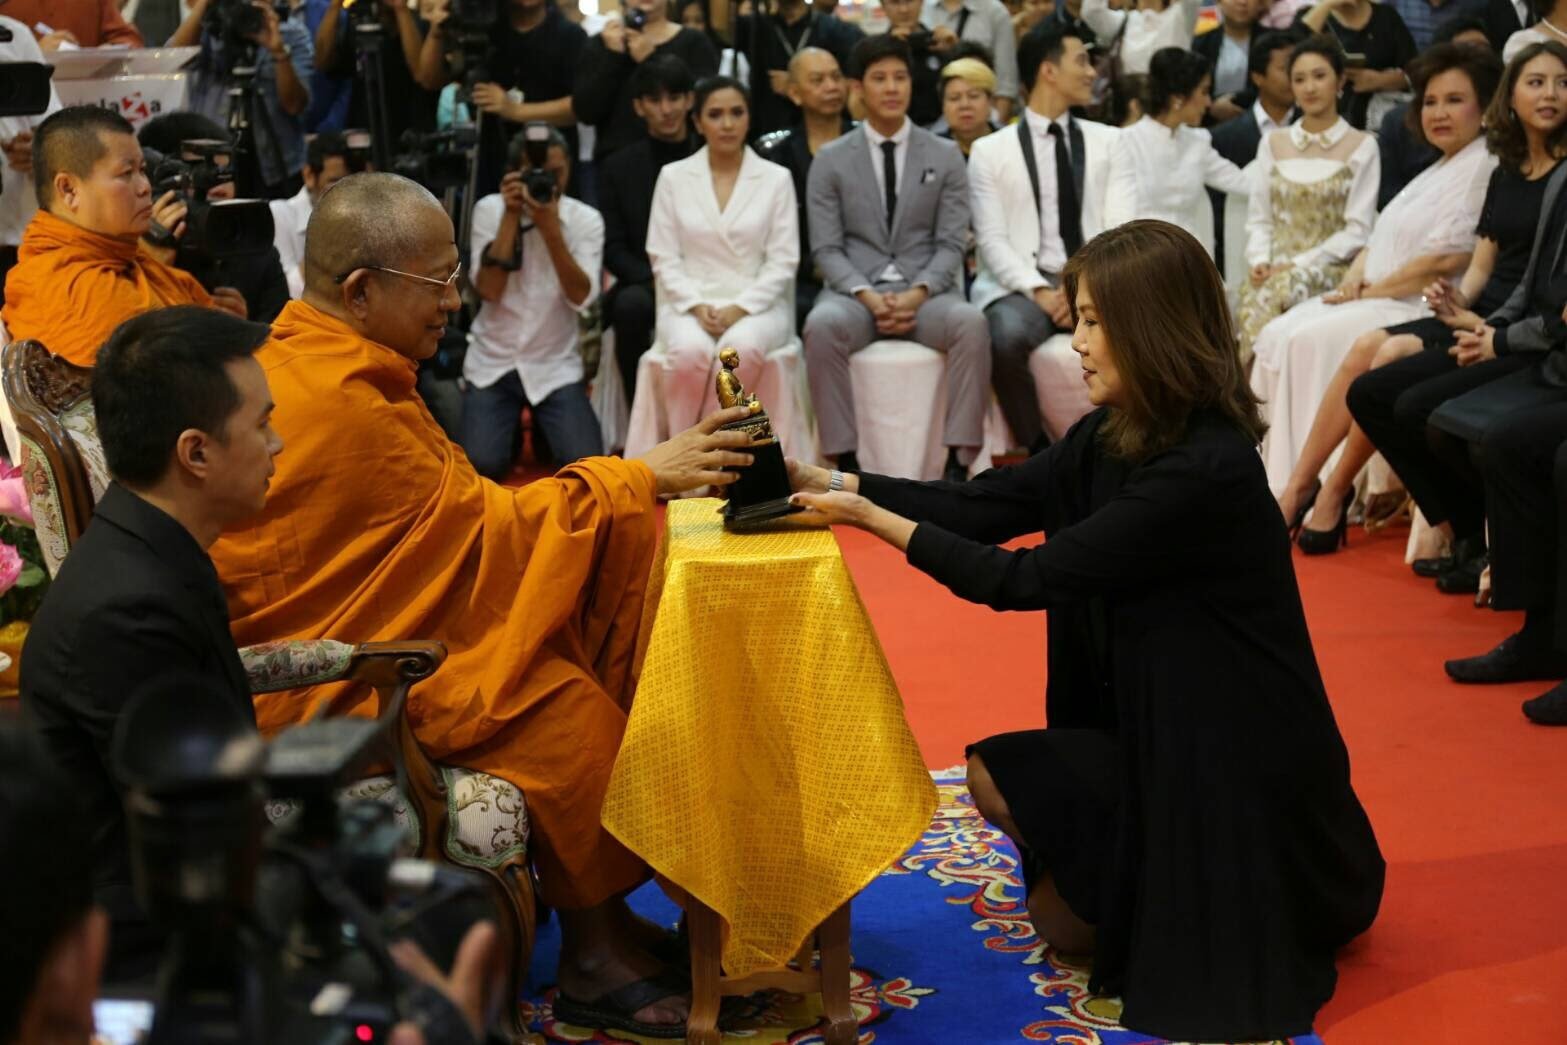 รางวัล“ทูตพระพุทธศาสนาวันมาฆบูชา 2560” ศิลปินส่งเสริมพระพุทธศาสนา ดร.สุรัตน์ จงดา